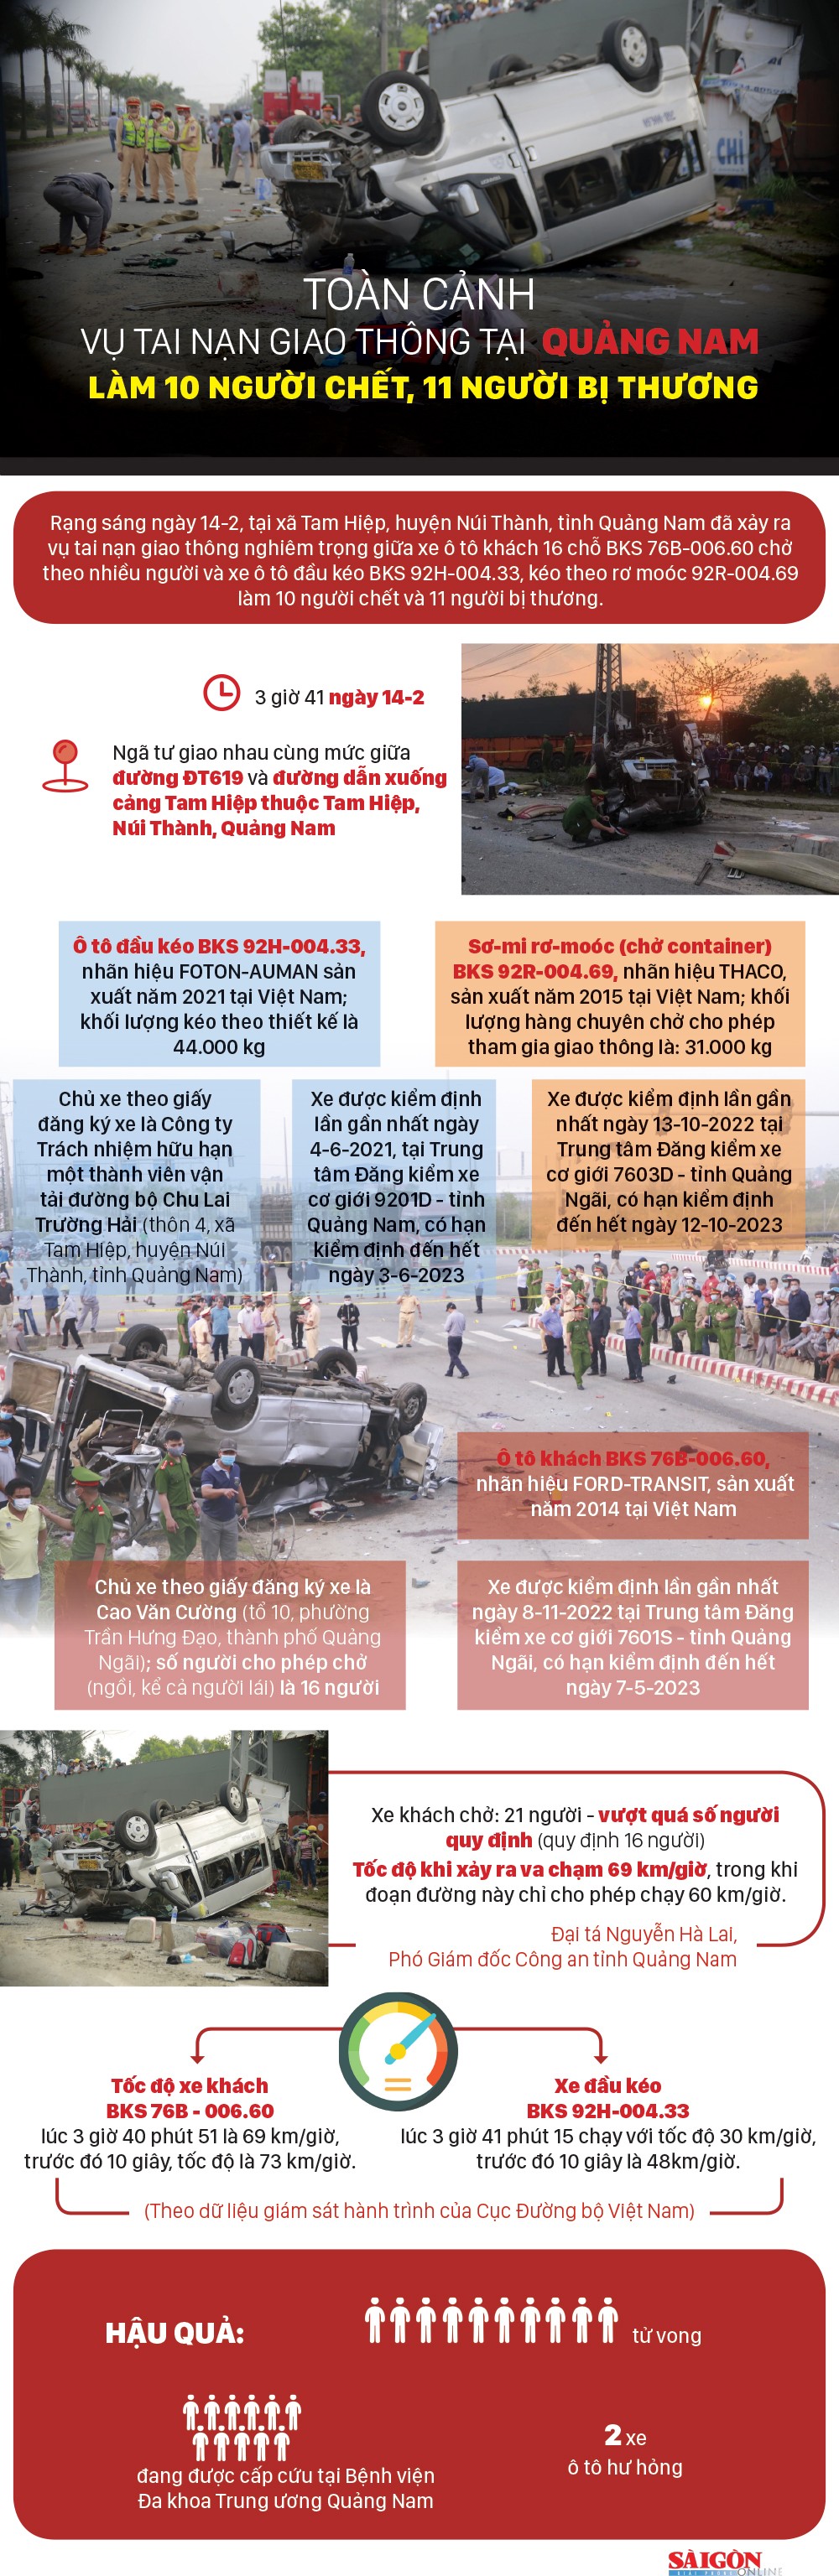 Toàn cảnh vụ tai nạn giao thông tại Quảng Nam làm 10 người chết, 11 người bị thương - Ảnh 1.